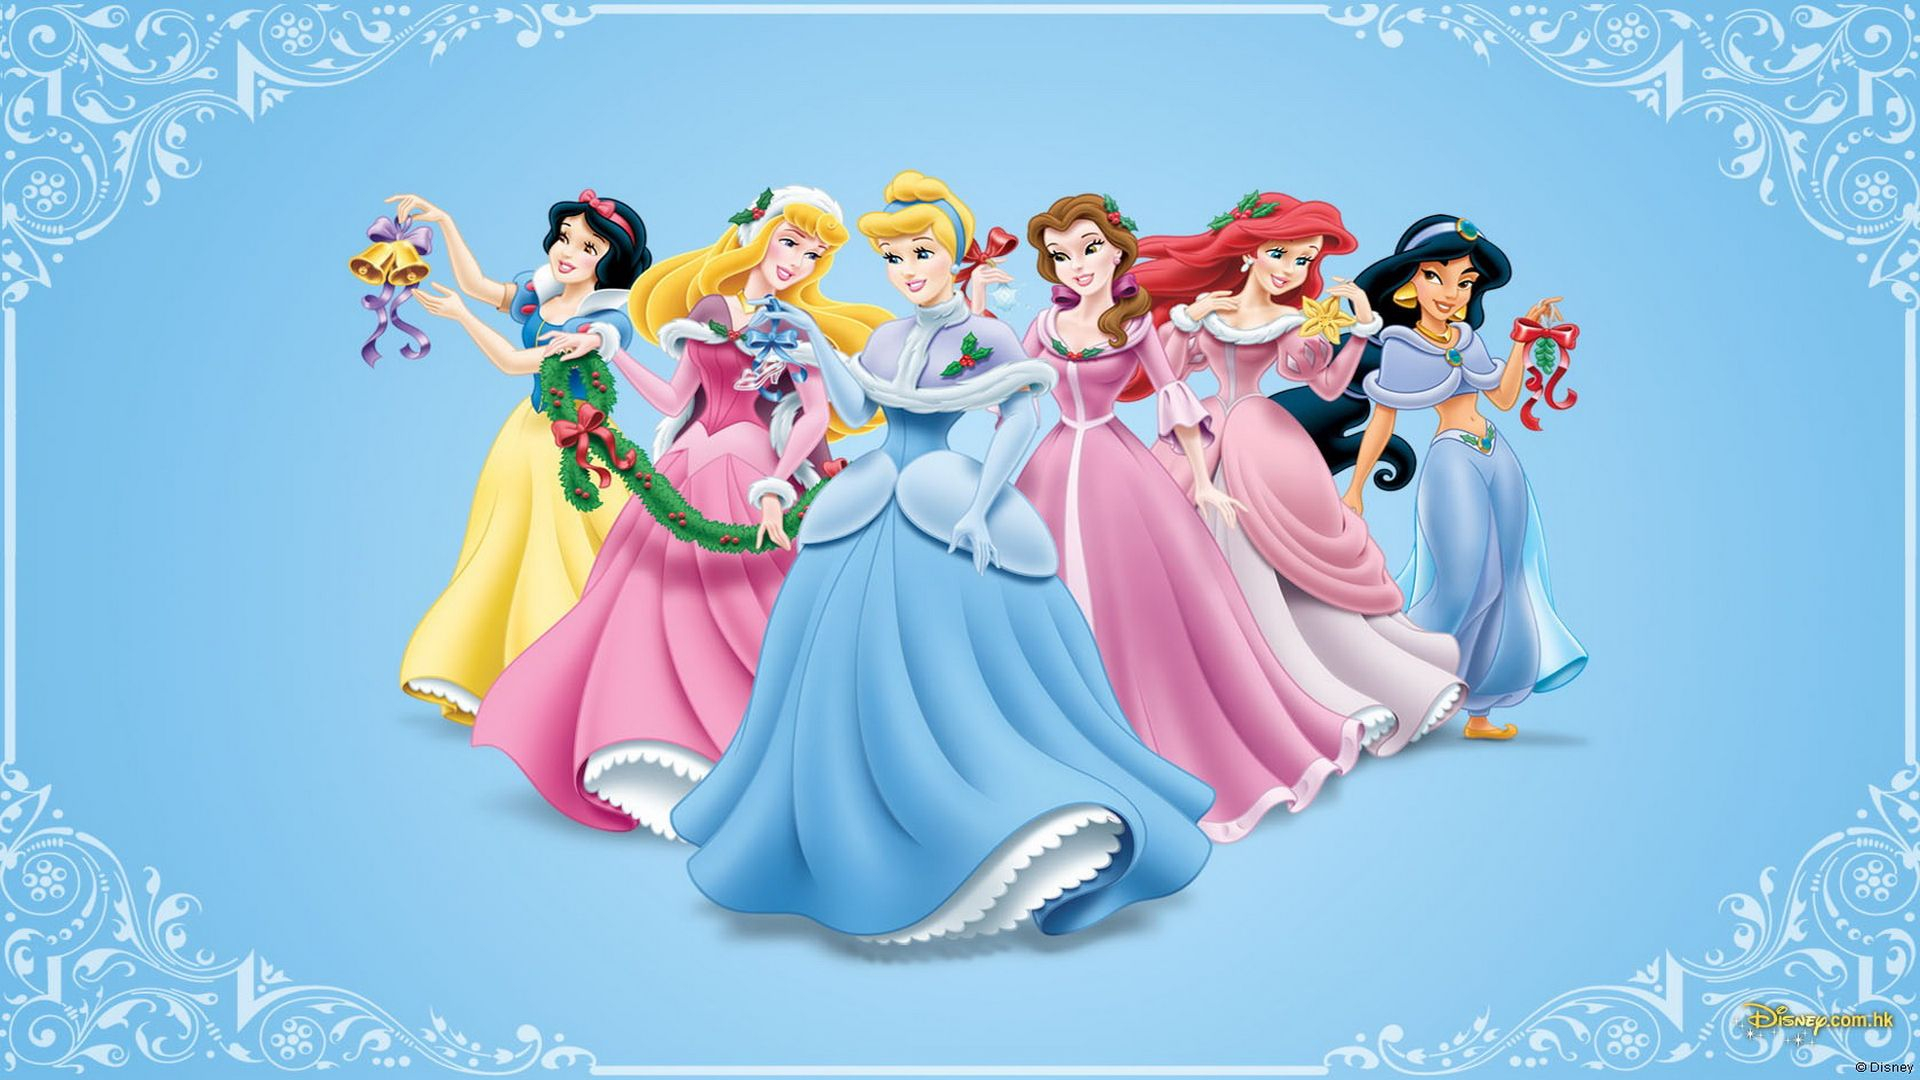 Anime Disney Princess Hd Wallpaper - Disney Princess Wallpaper Hd - HD Wallpaper 